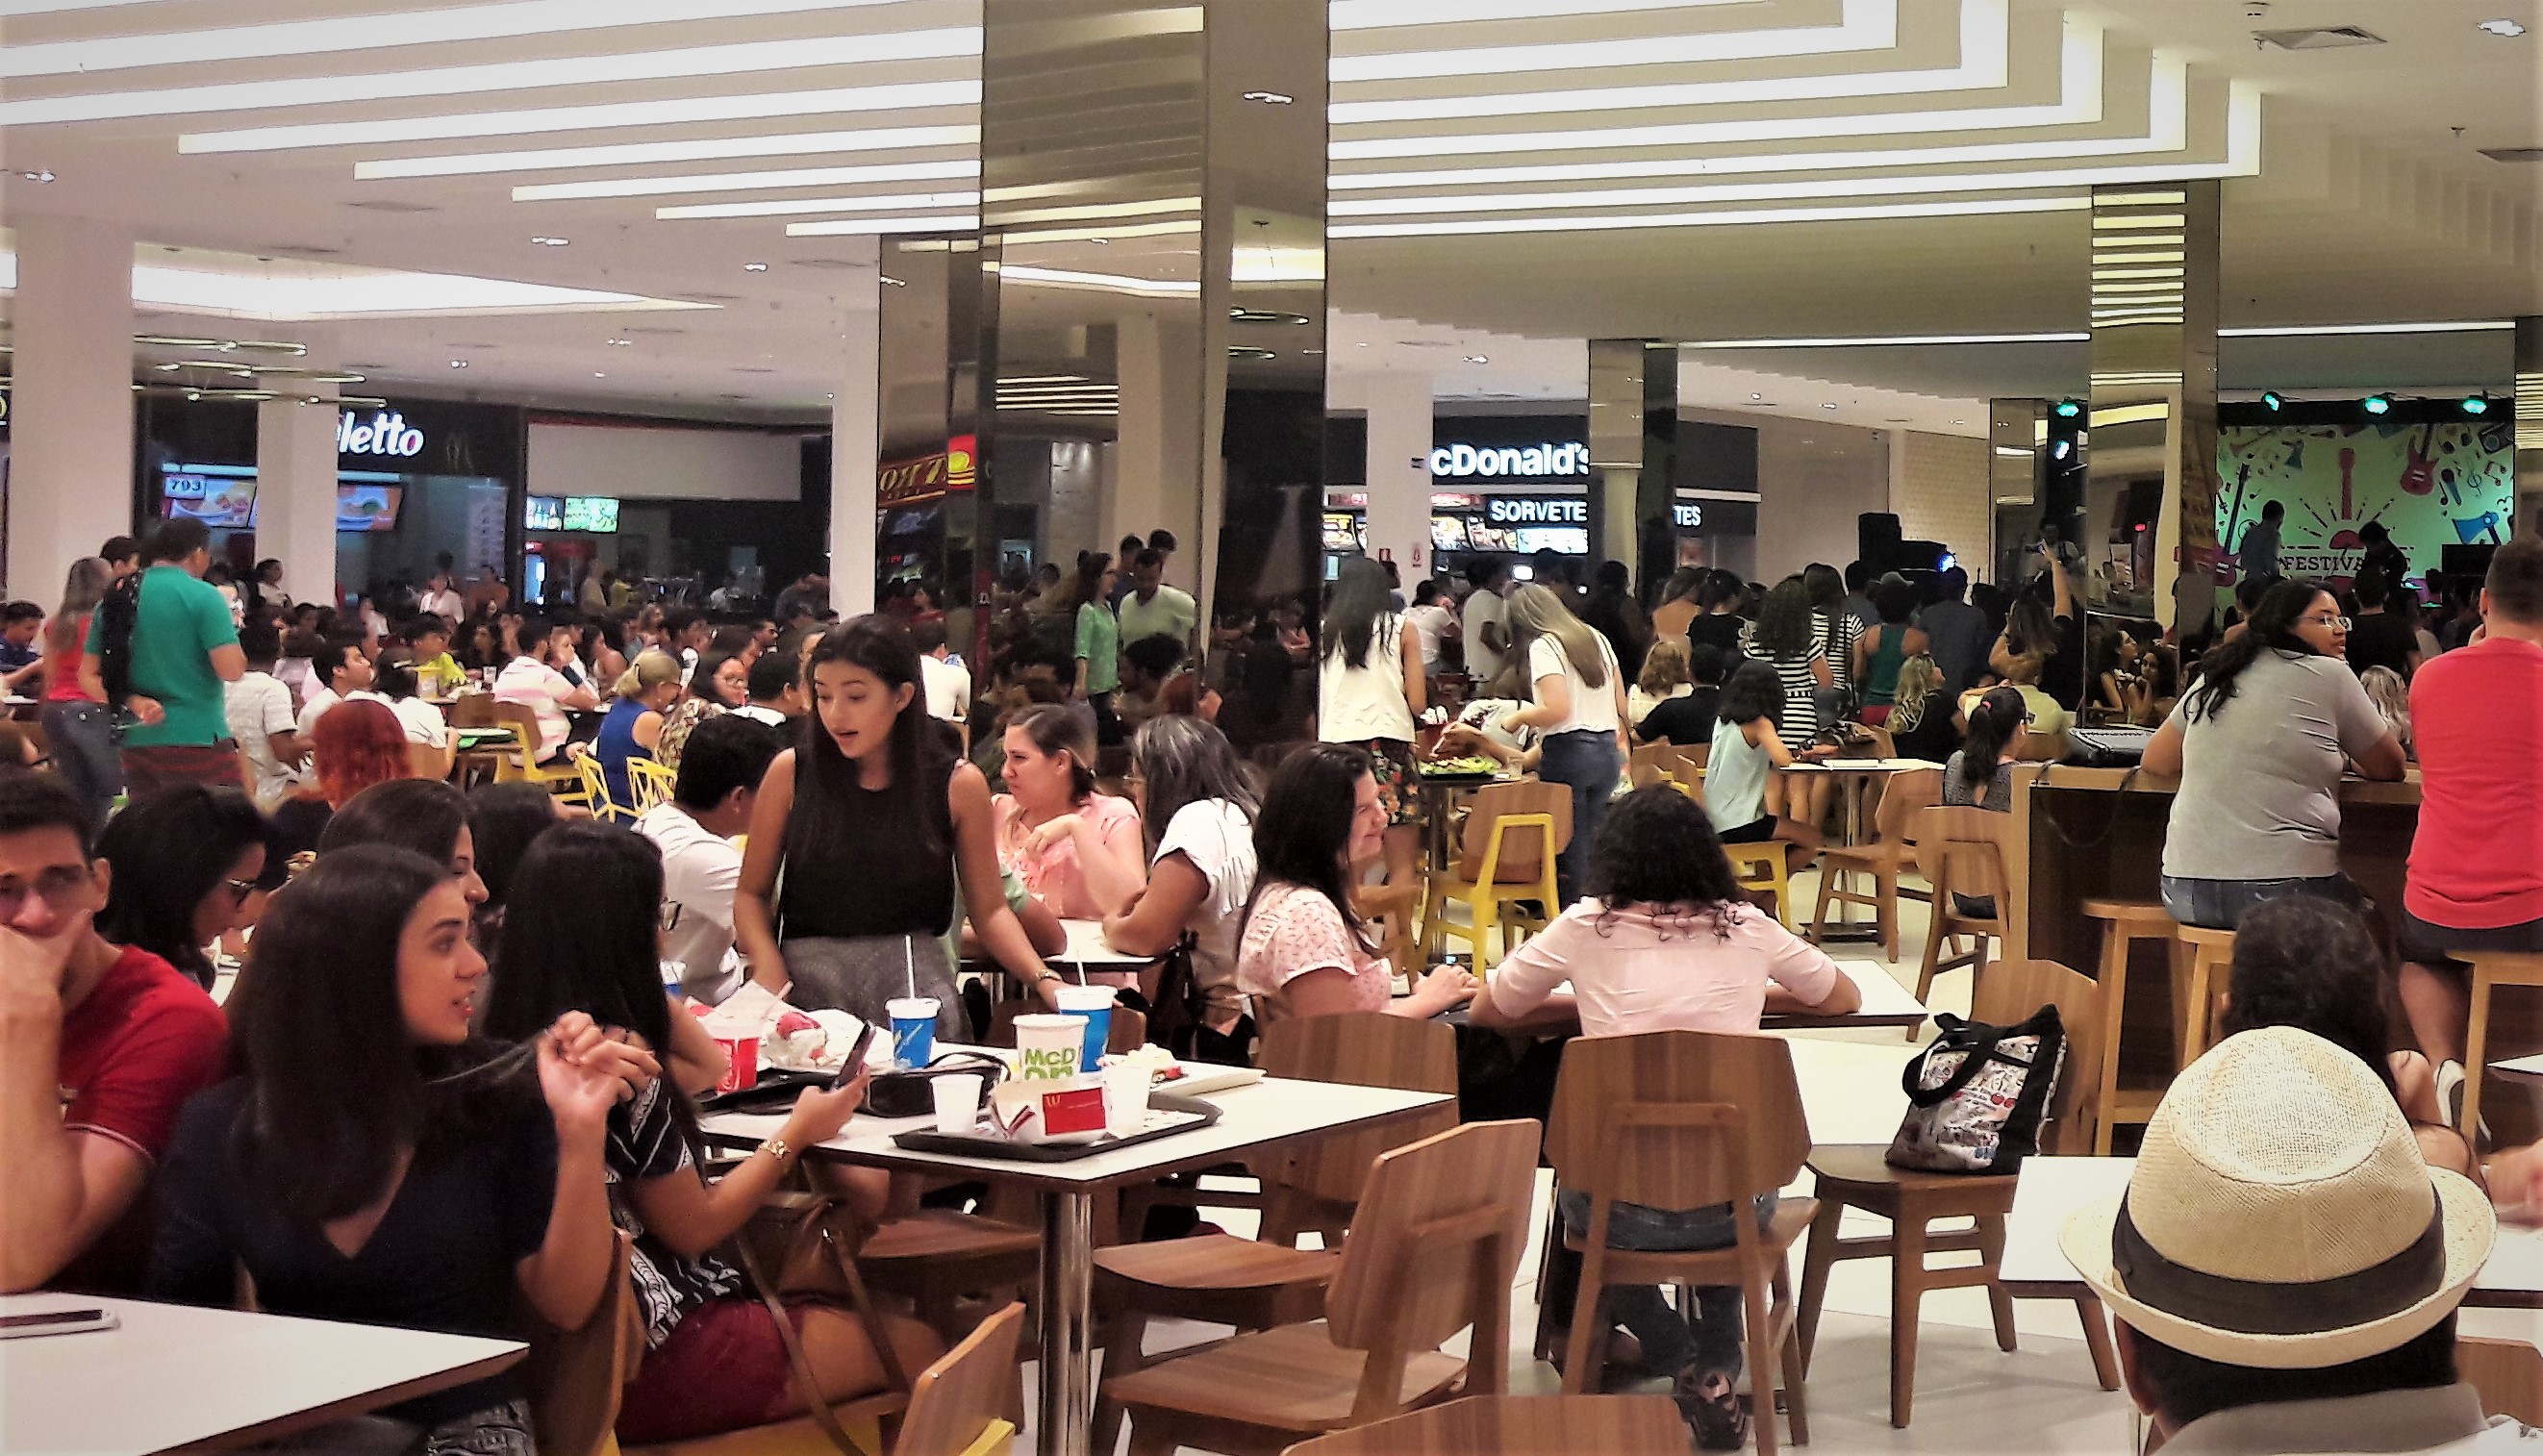 A praça de alimentação dos shoppings fica mais movimentada nos feriados (Foto: Divulgação)